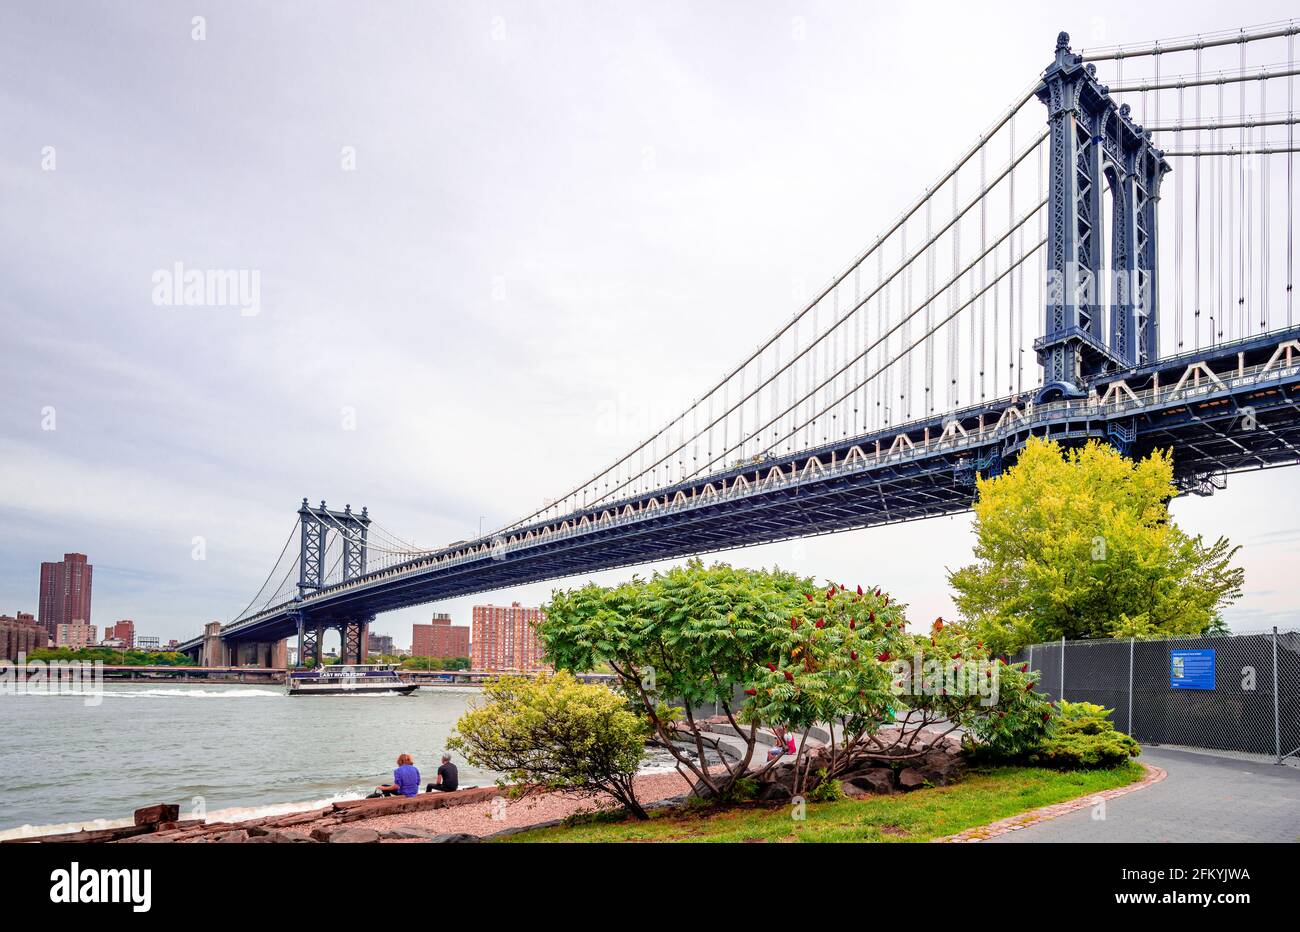 New York City, États-Unis - juillet 16 2014 : le pont de Manhattan vu du Brooklyn Bridge Park, un parc au bord de l'eau le long de l'East River à New York. Banque D'Images